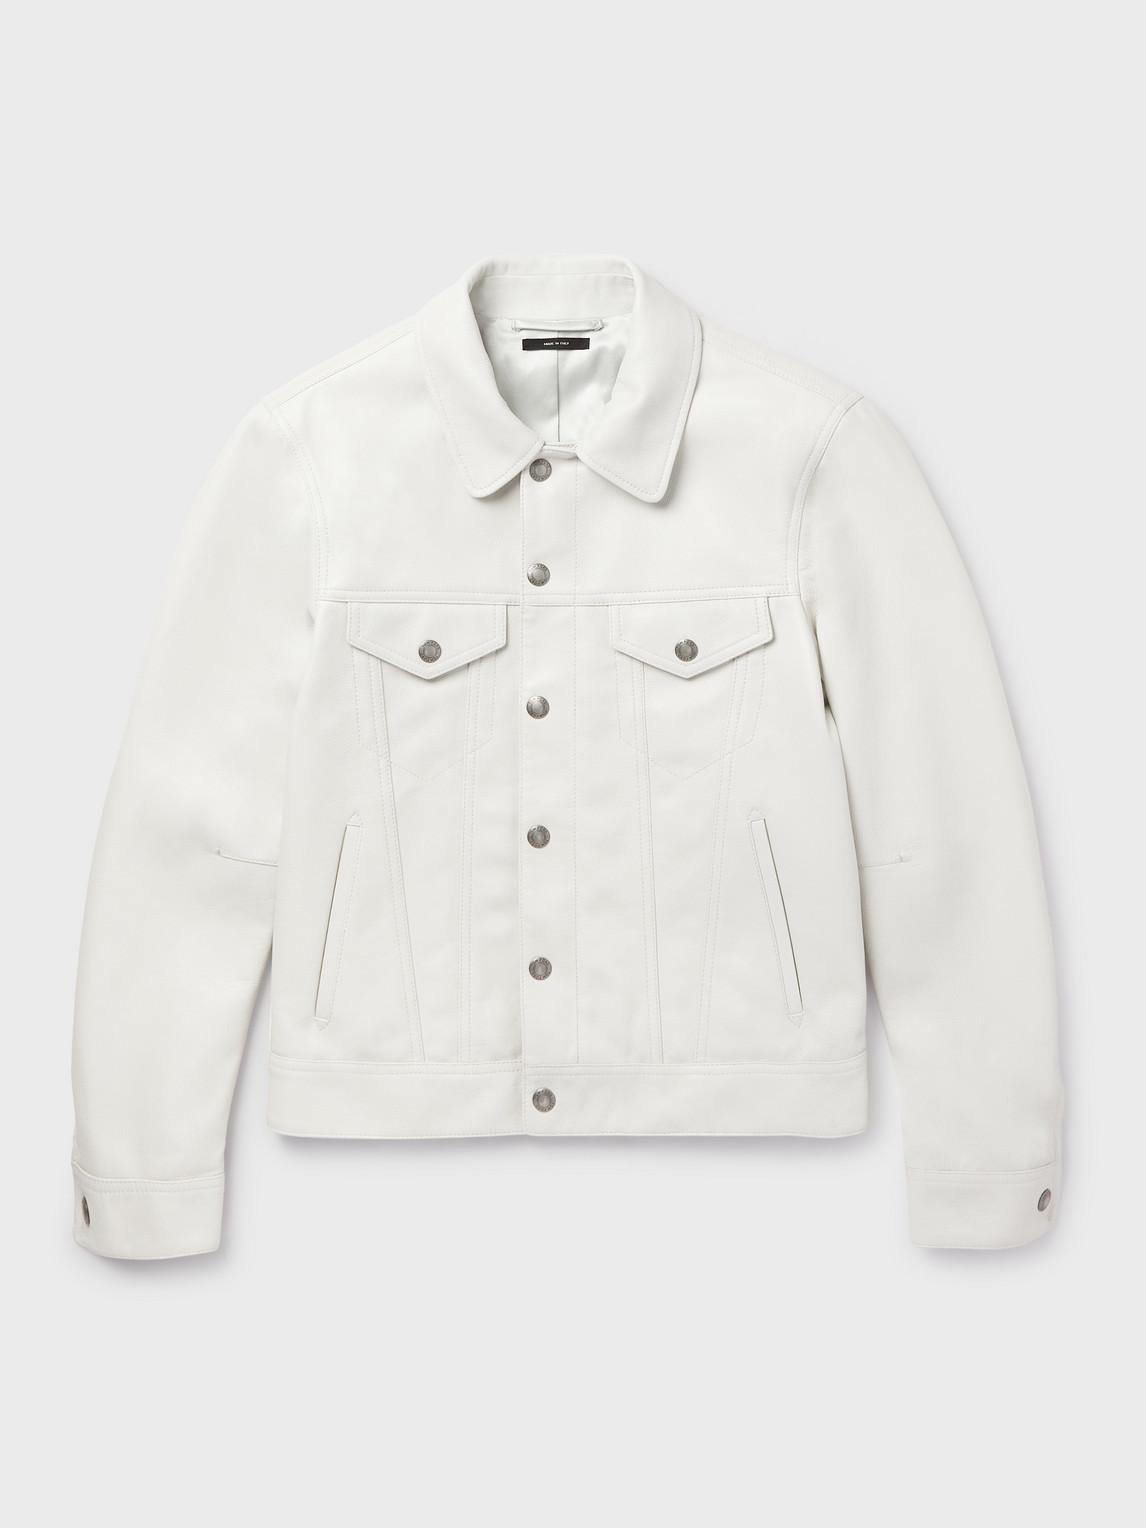 Tom Ford Full-grain Leather Trucker Jacket in White for Men | Lyst